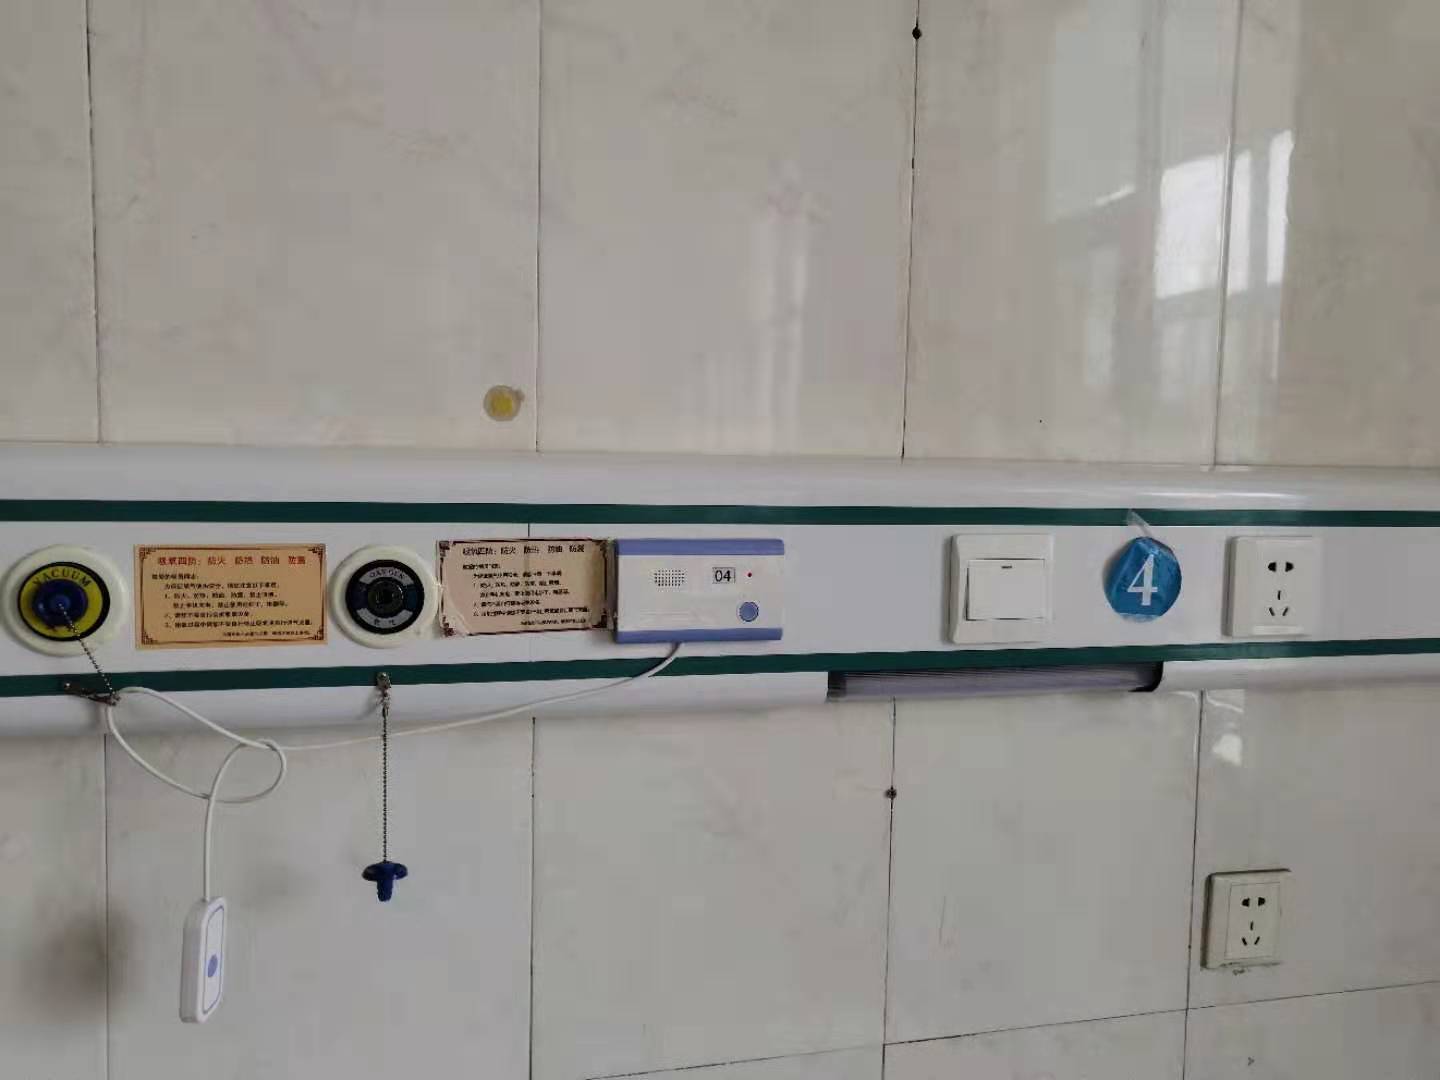 四川中心供氧厂家手术室净化系统